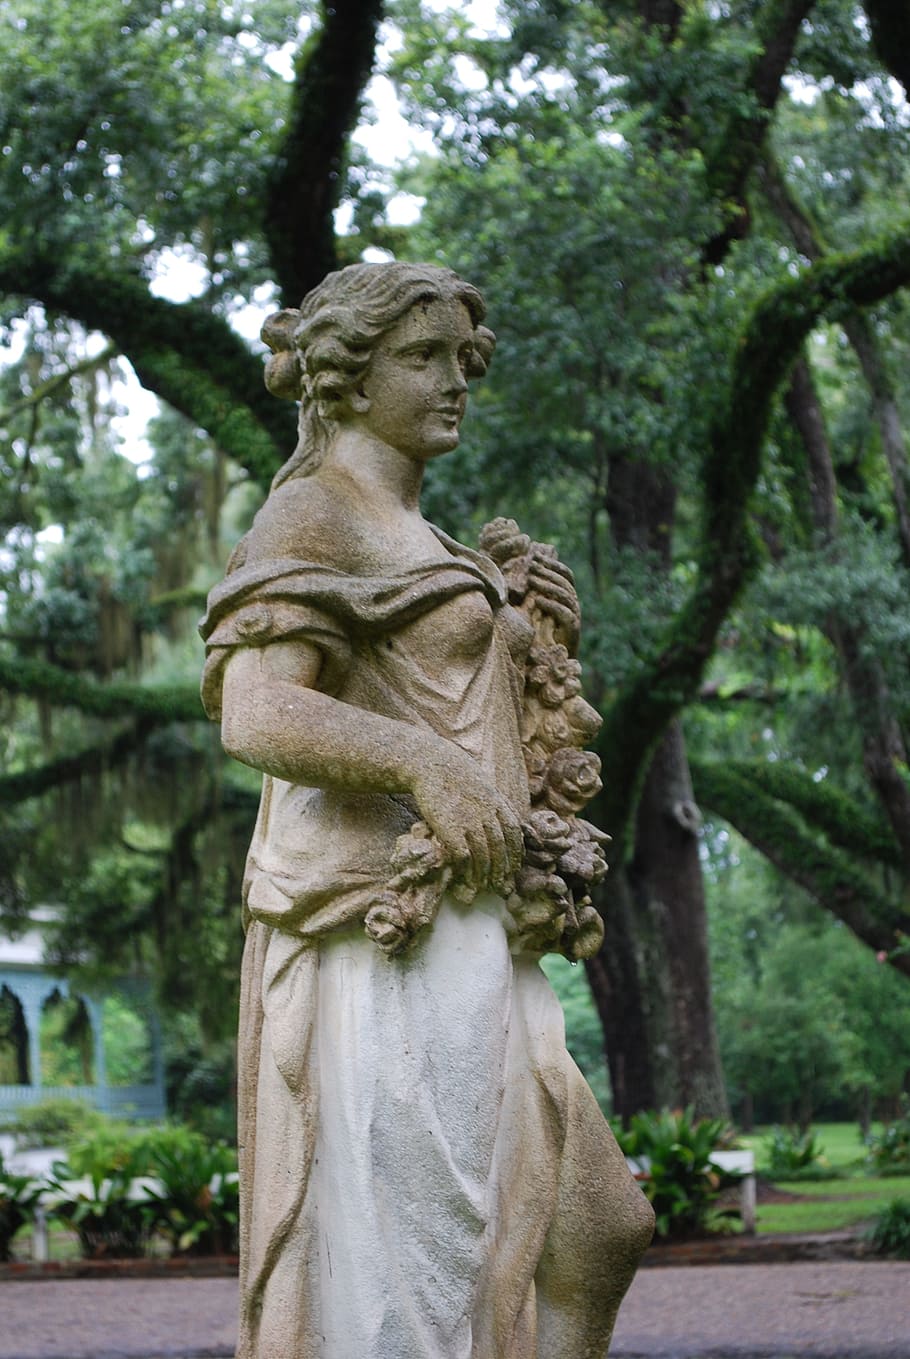 Estátua, Escultura, Fêmea, senhora, Mona Lisa, plantação de murtas, Louisiana, árvore, cemitério, tristeza